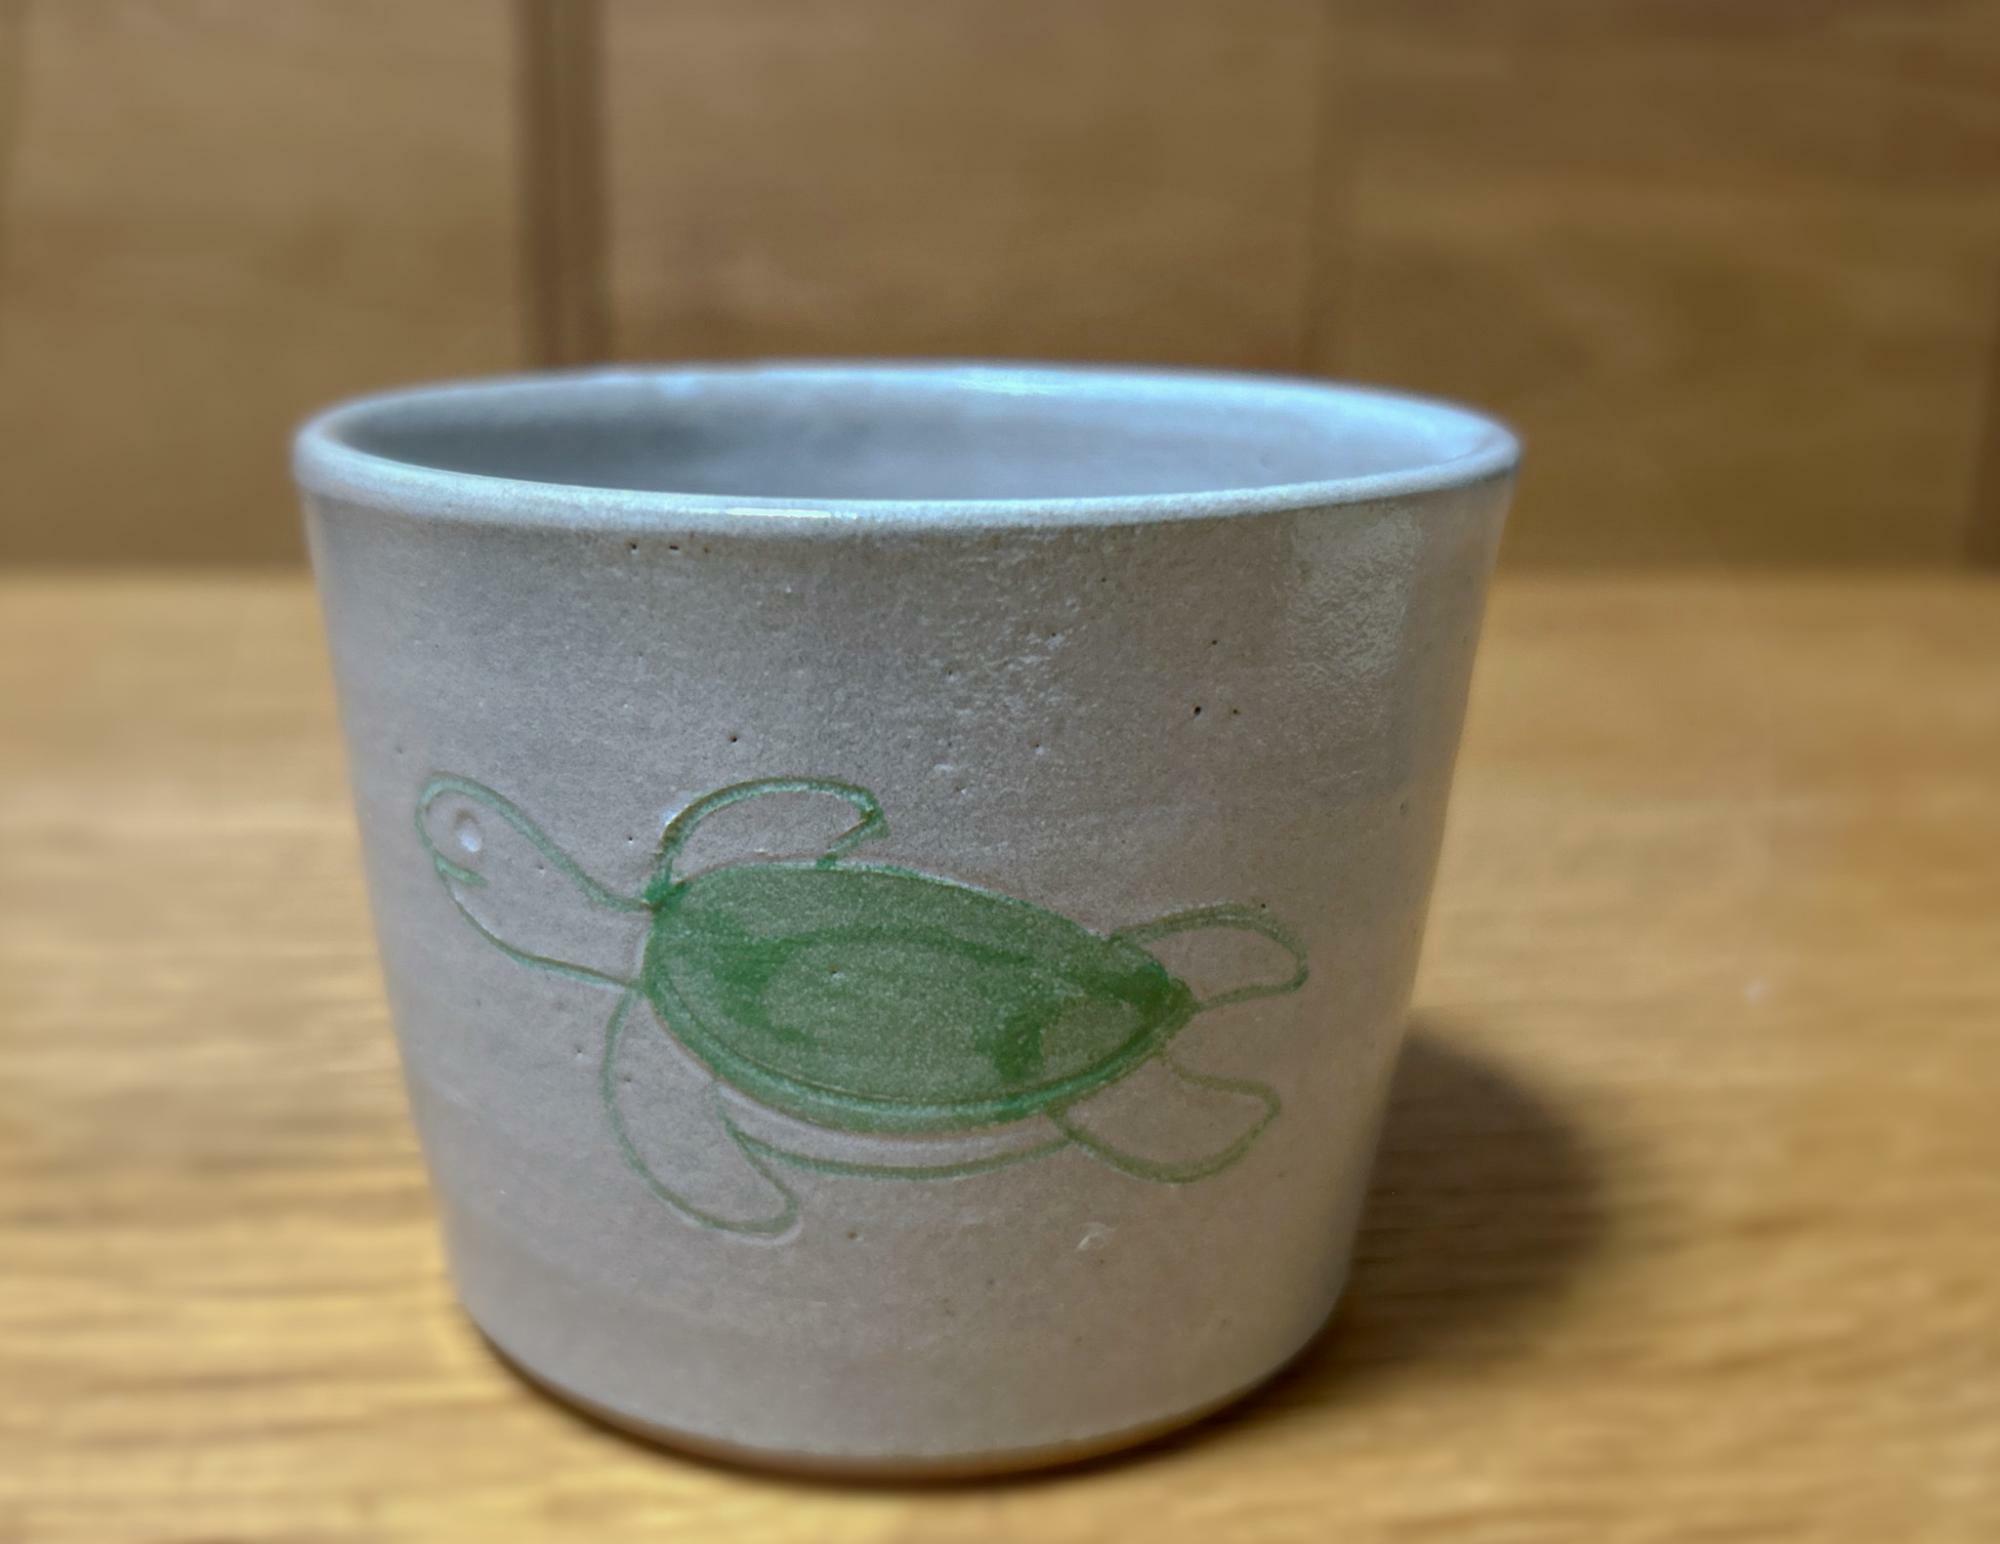 以前アクアワールド・大洗のお土産コーナーで購入したウミガメのイラストが描かれたカップ。お茶をしながら、ウミガメに想いを馳せたい（現在は販売していないようです）